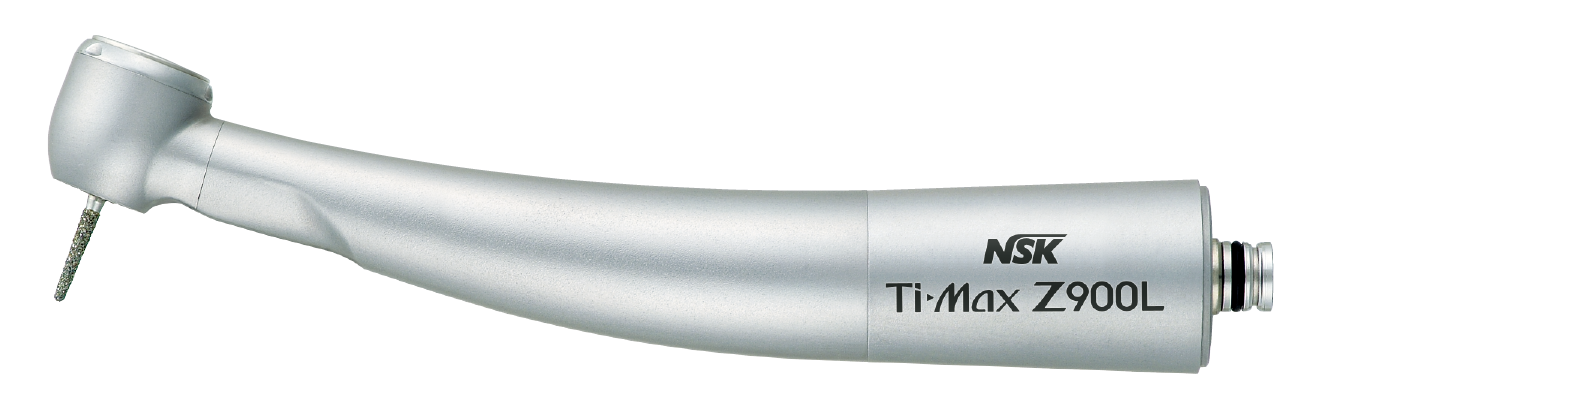 NSK Ti-Max Z900L, Lichtturbine, 26 Watt, NSK FlexiQuik-Anschluss